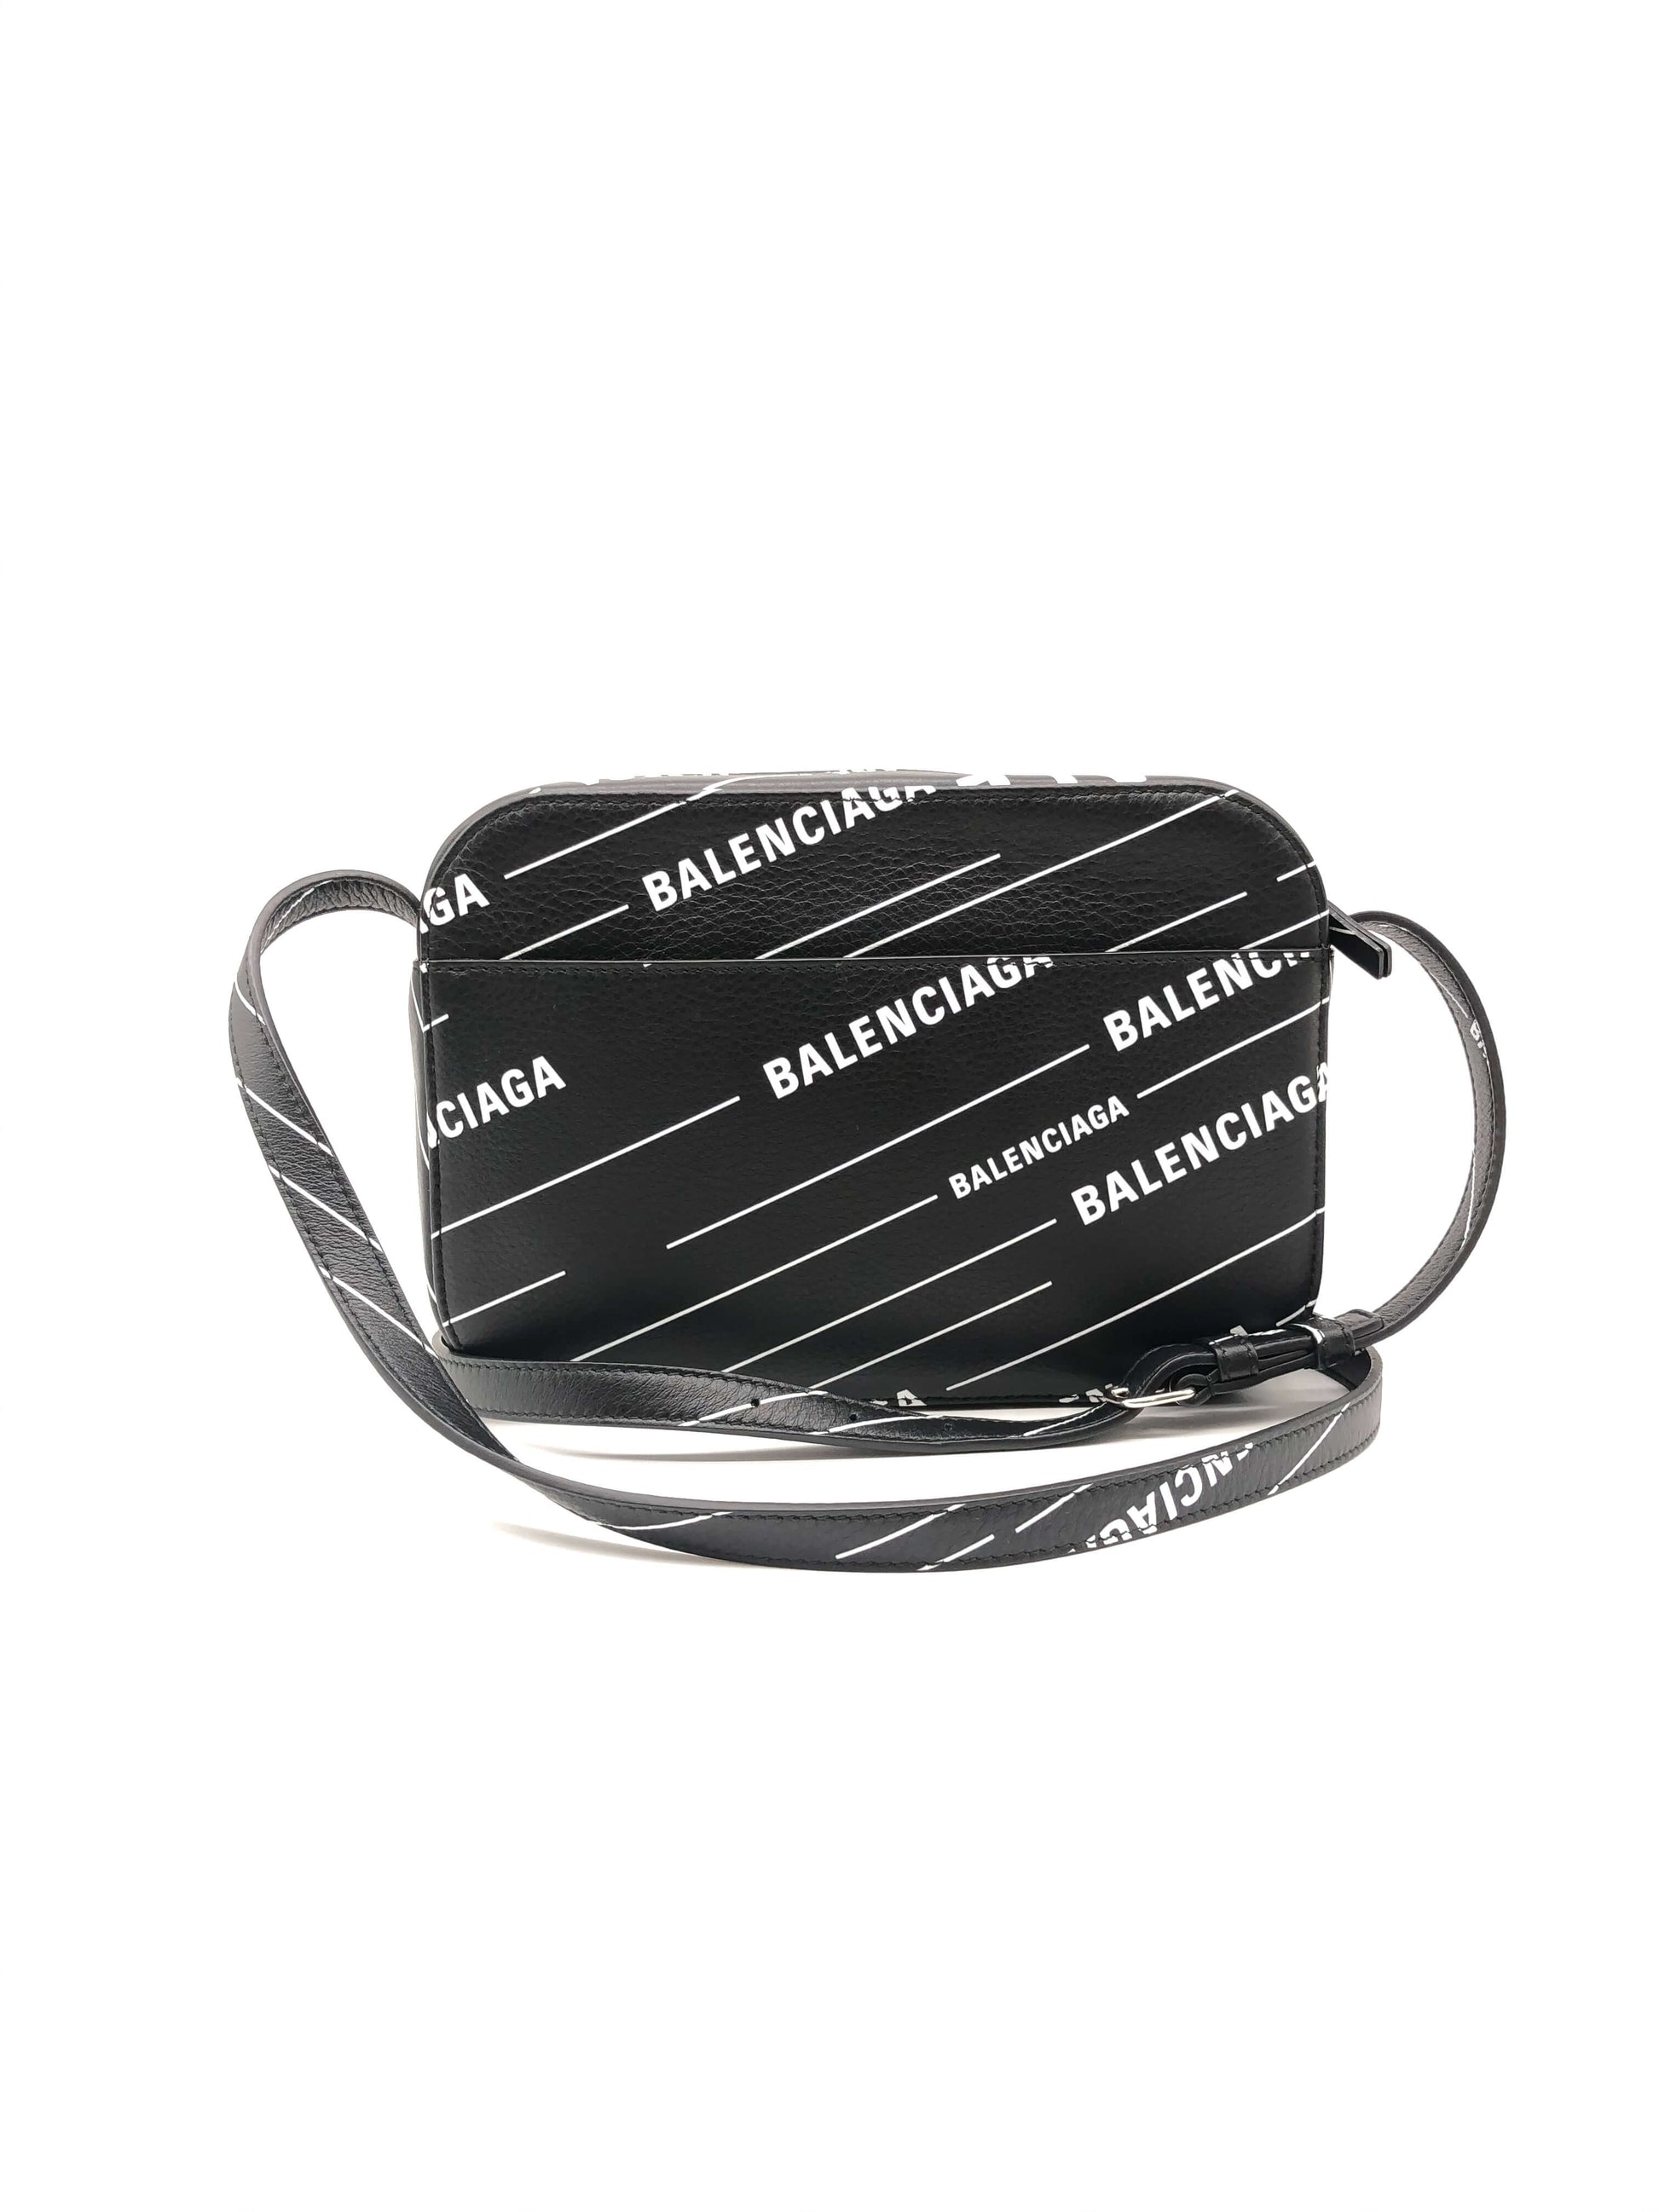 Balenciaga Black Camera Bag